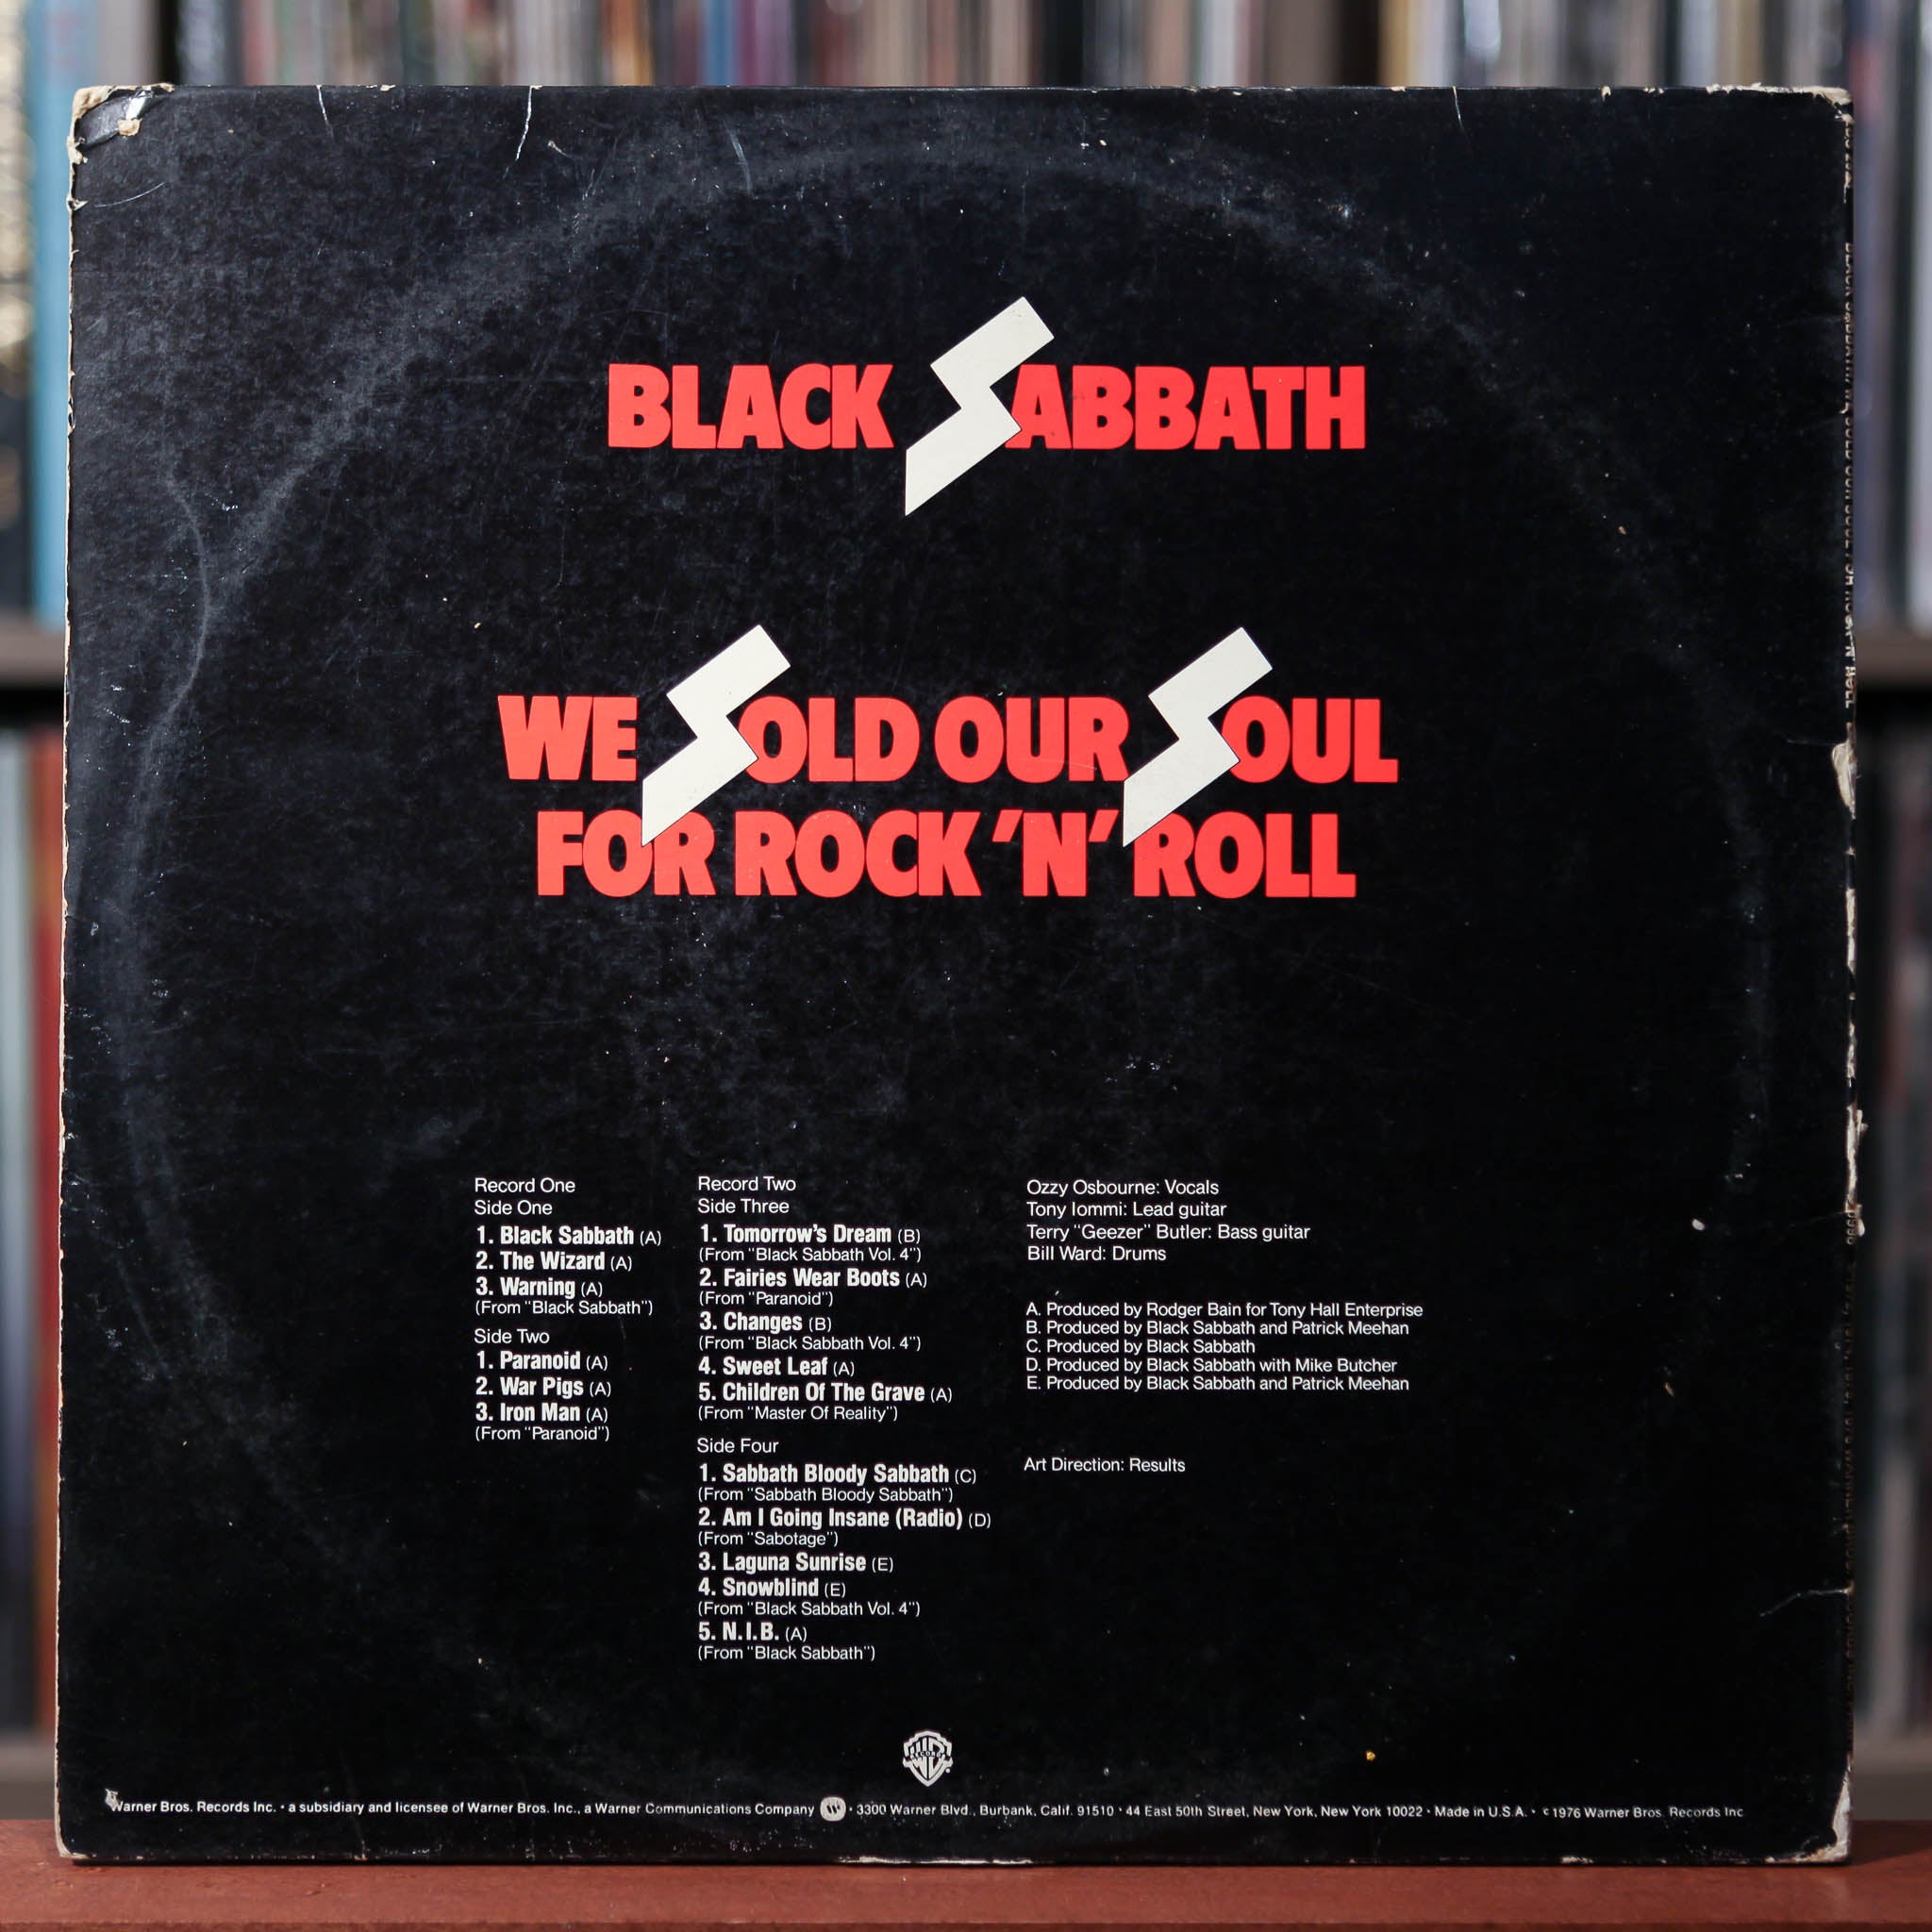 Black Sabbath - We Sold Our Soul For Rock 'N' Roll - 2LP - 1976 Warner